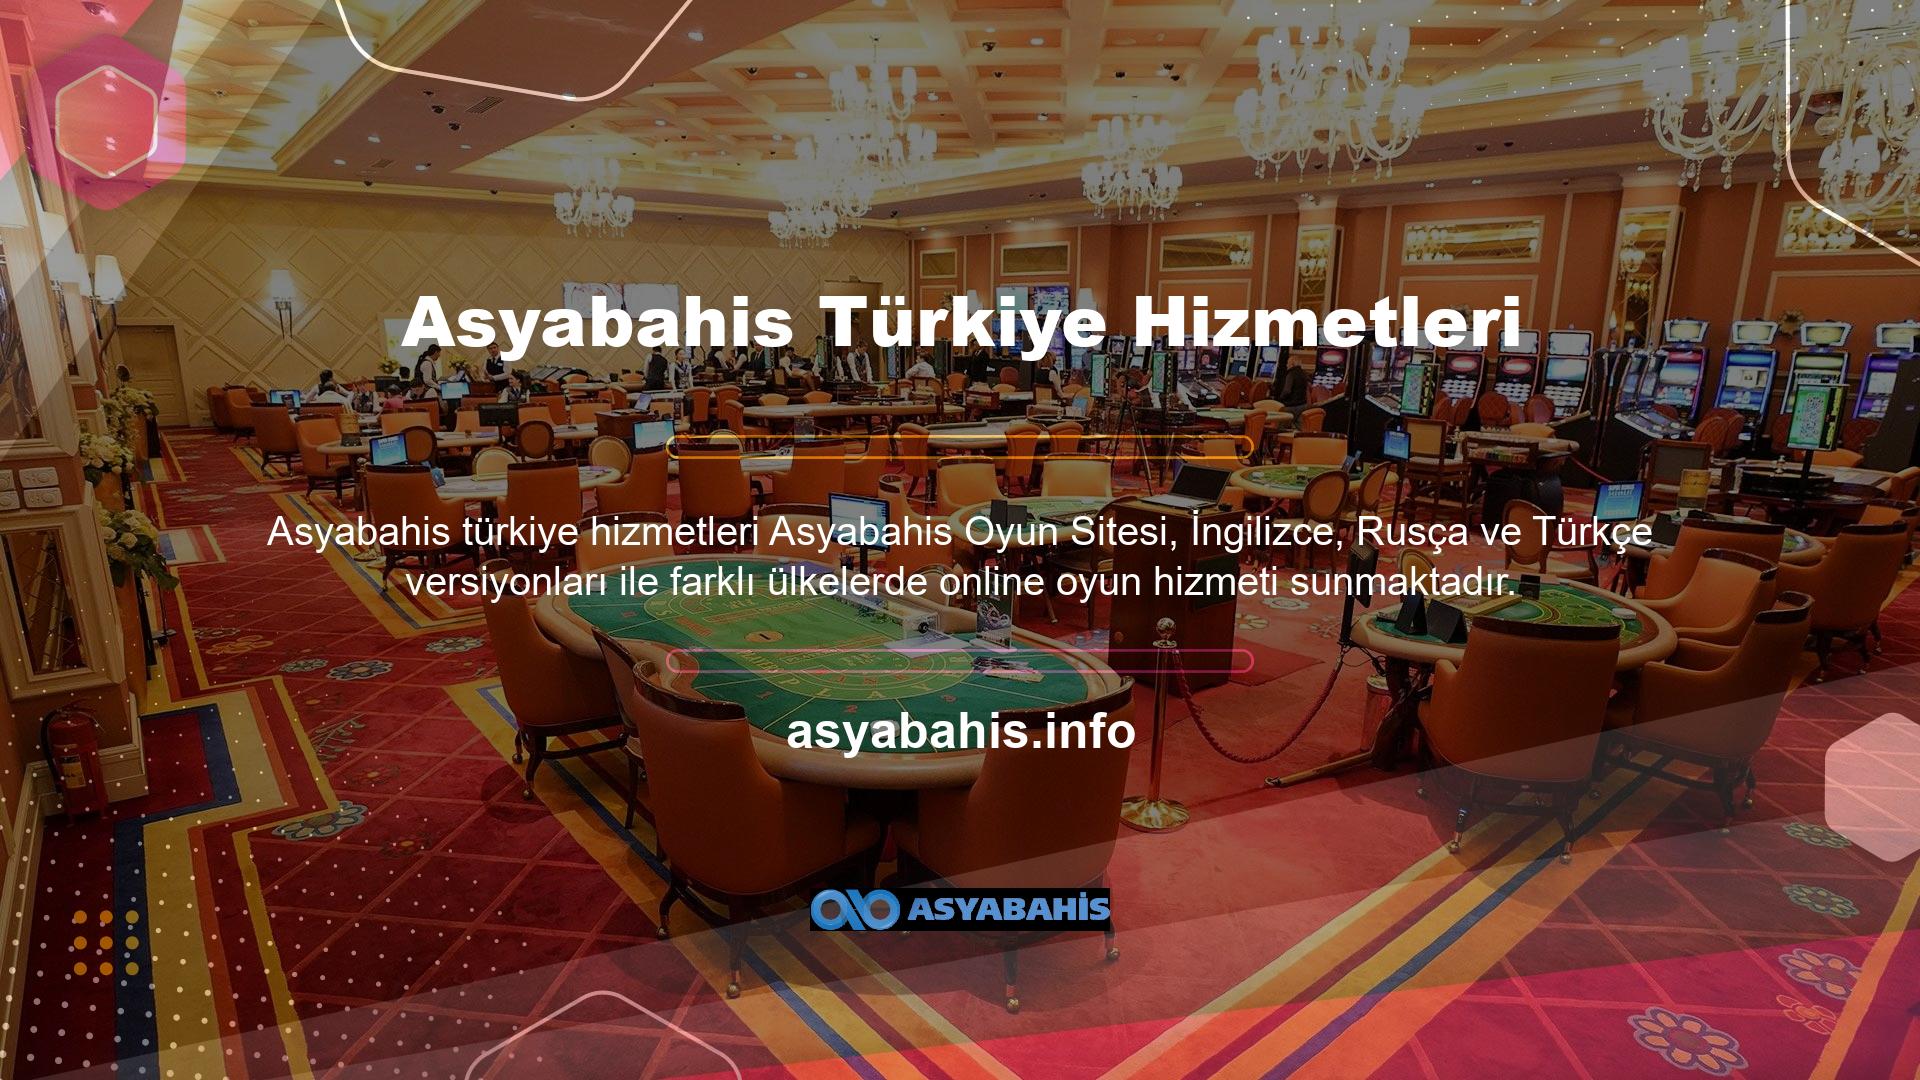 Ülkemizi ziyaret eden kullanıcılar Türkçe web sitelerine bağlanabilirler